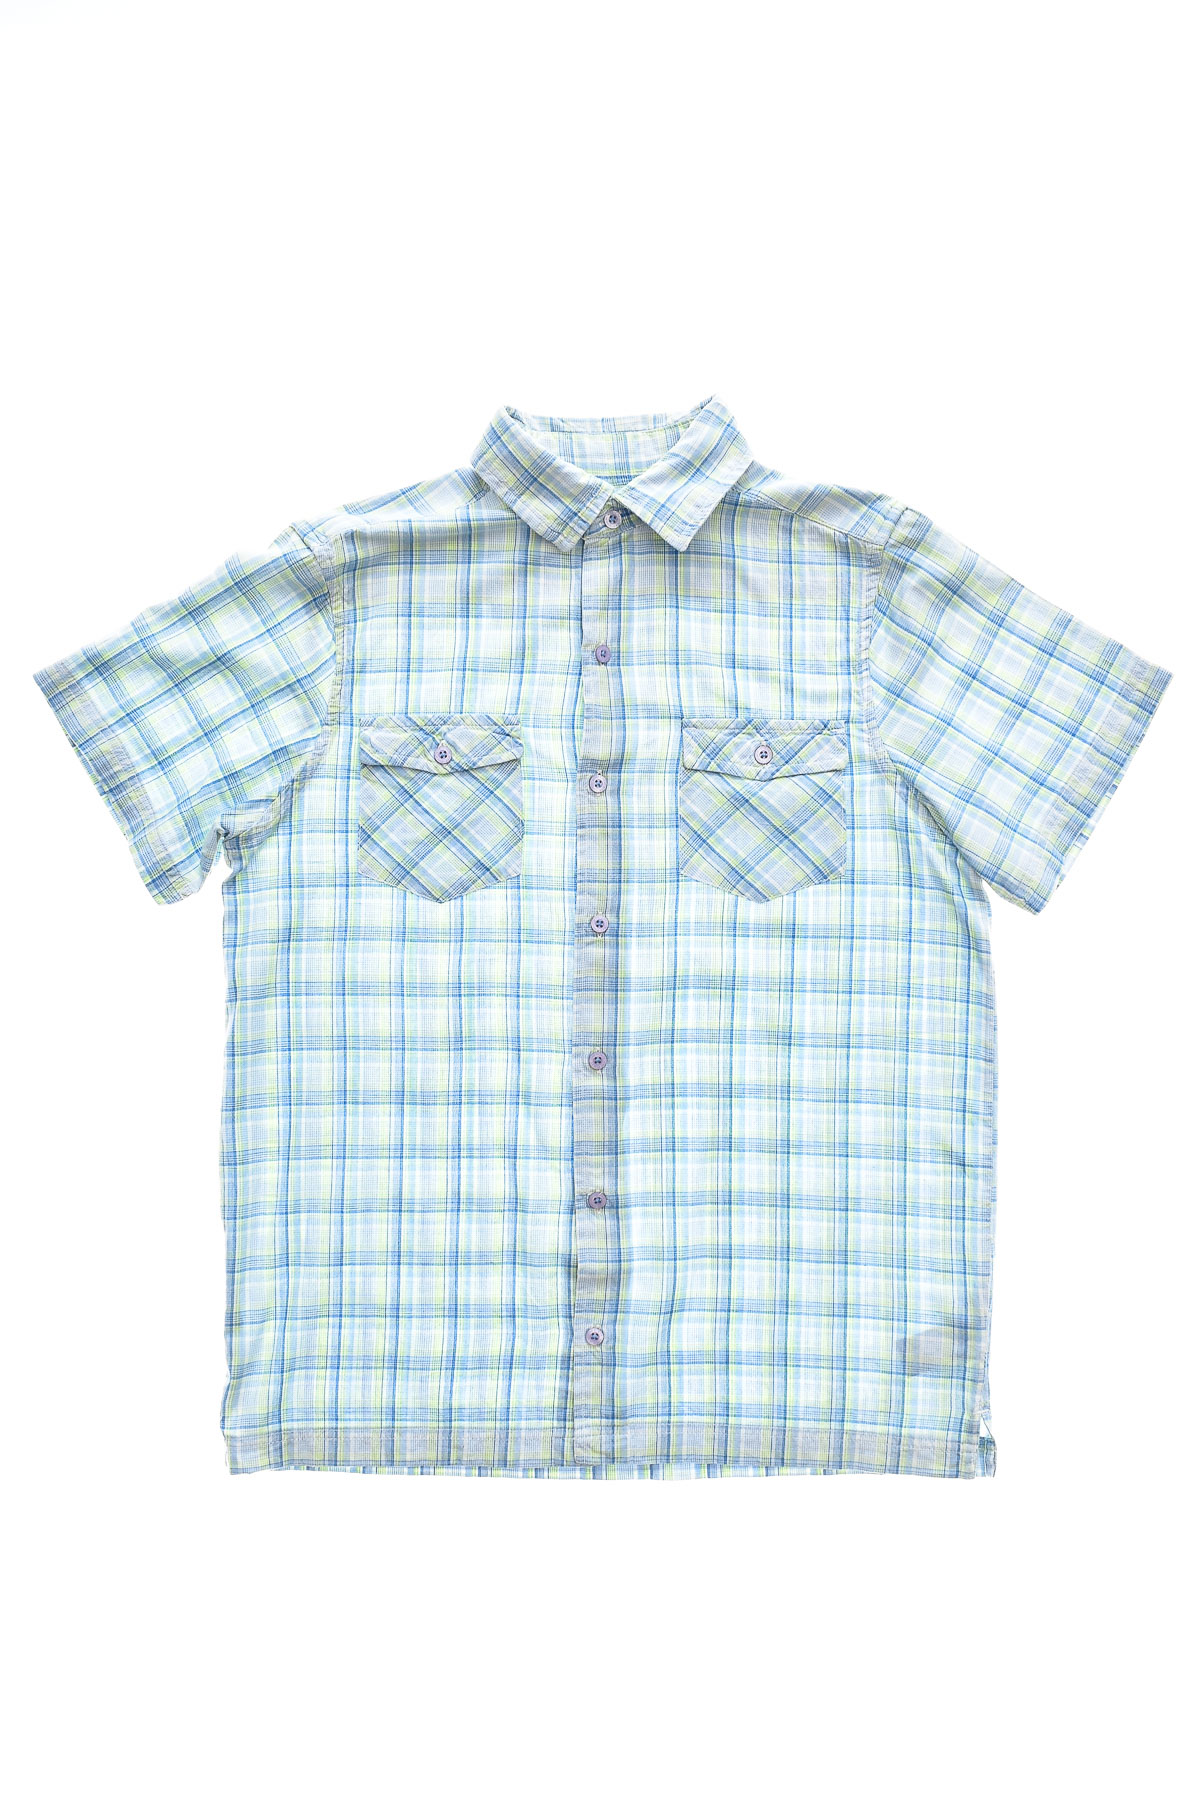 Ανδρικό πουκάμισο - CHEROKEE - 0